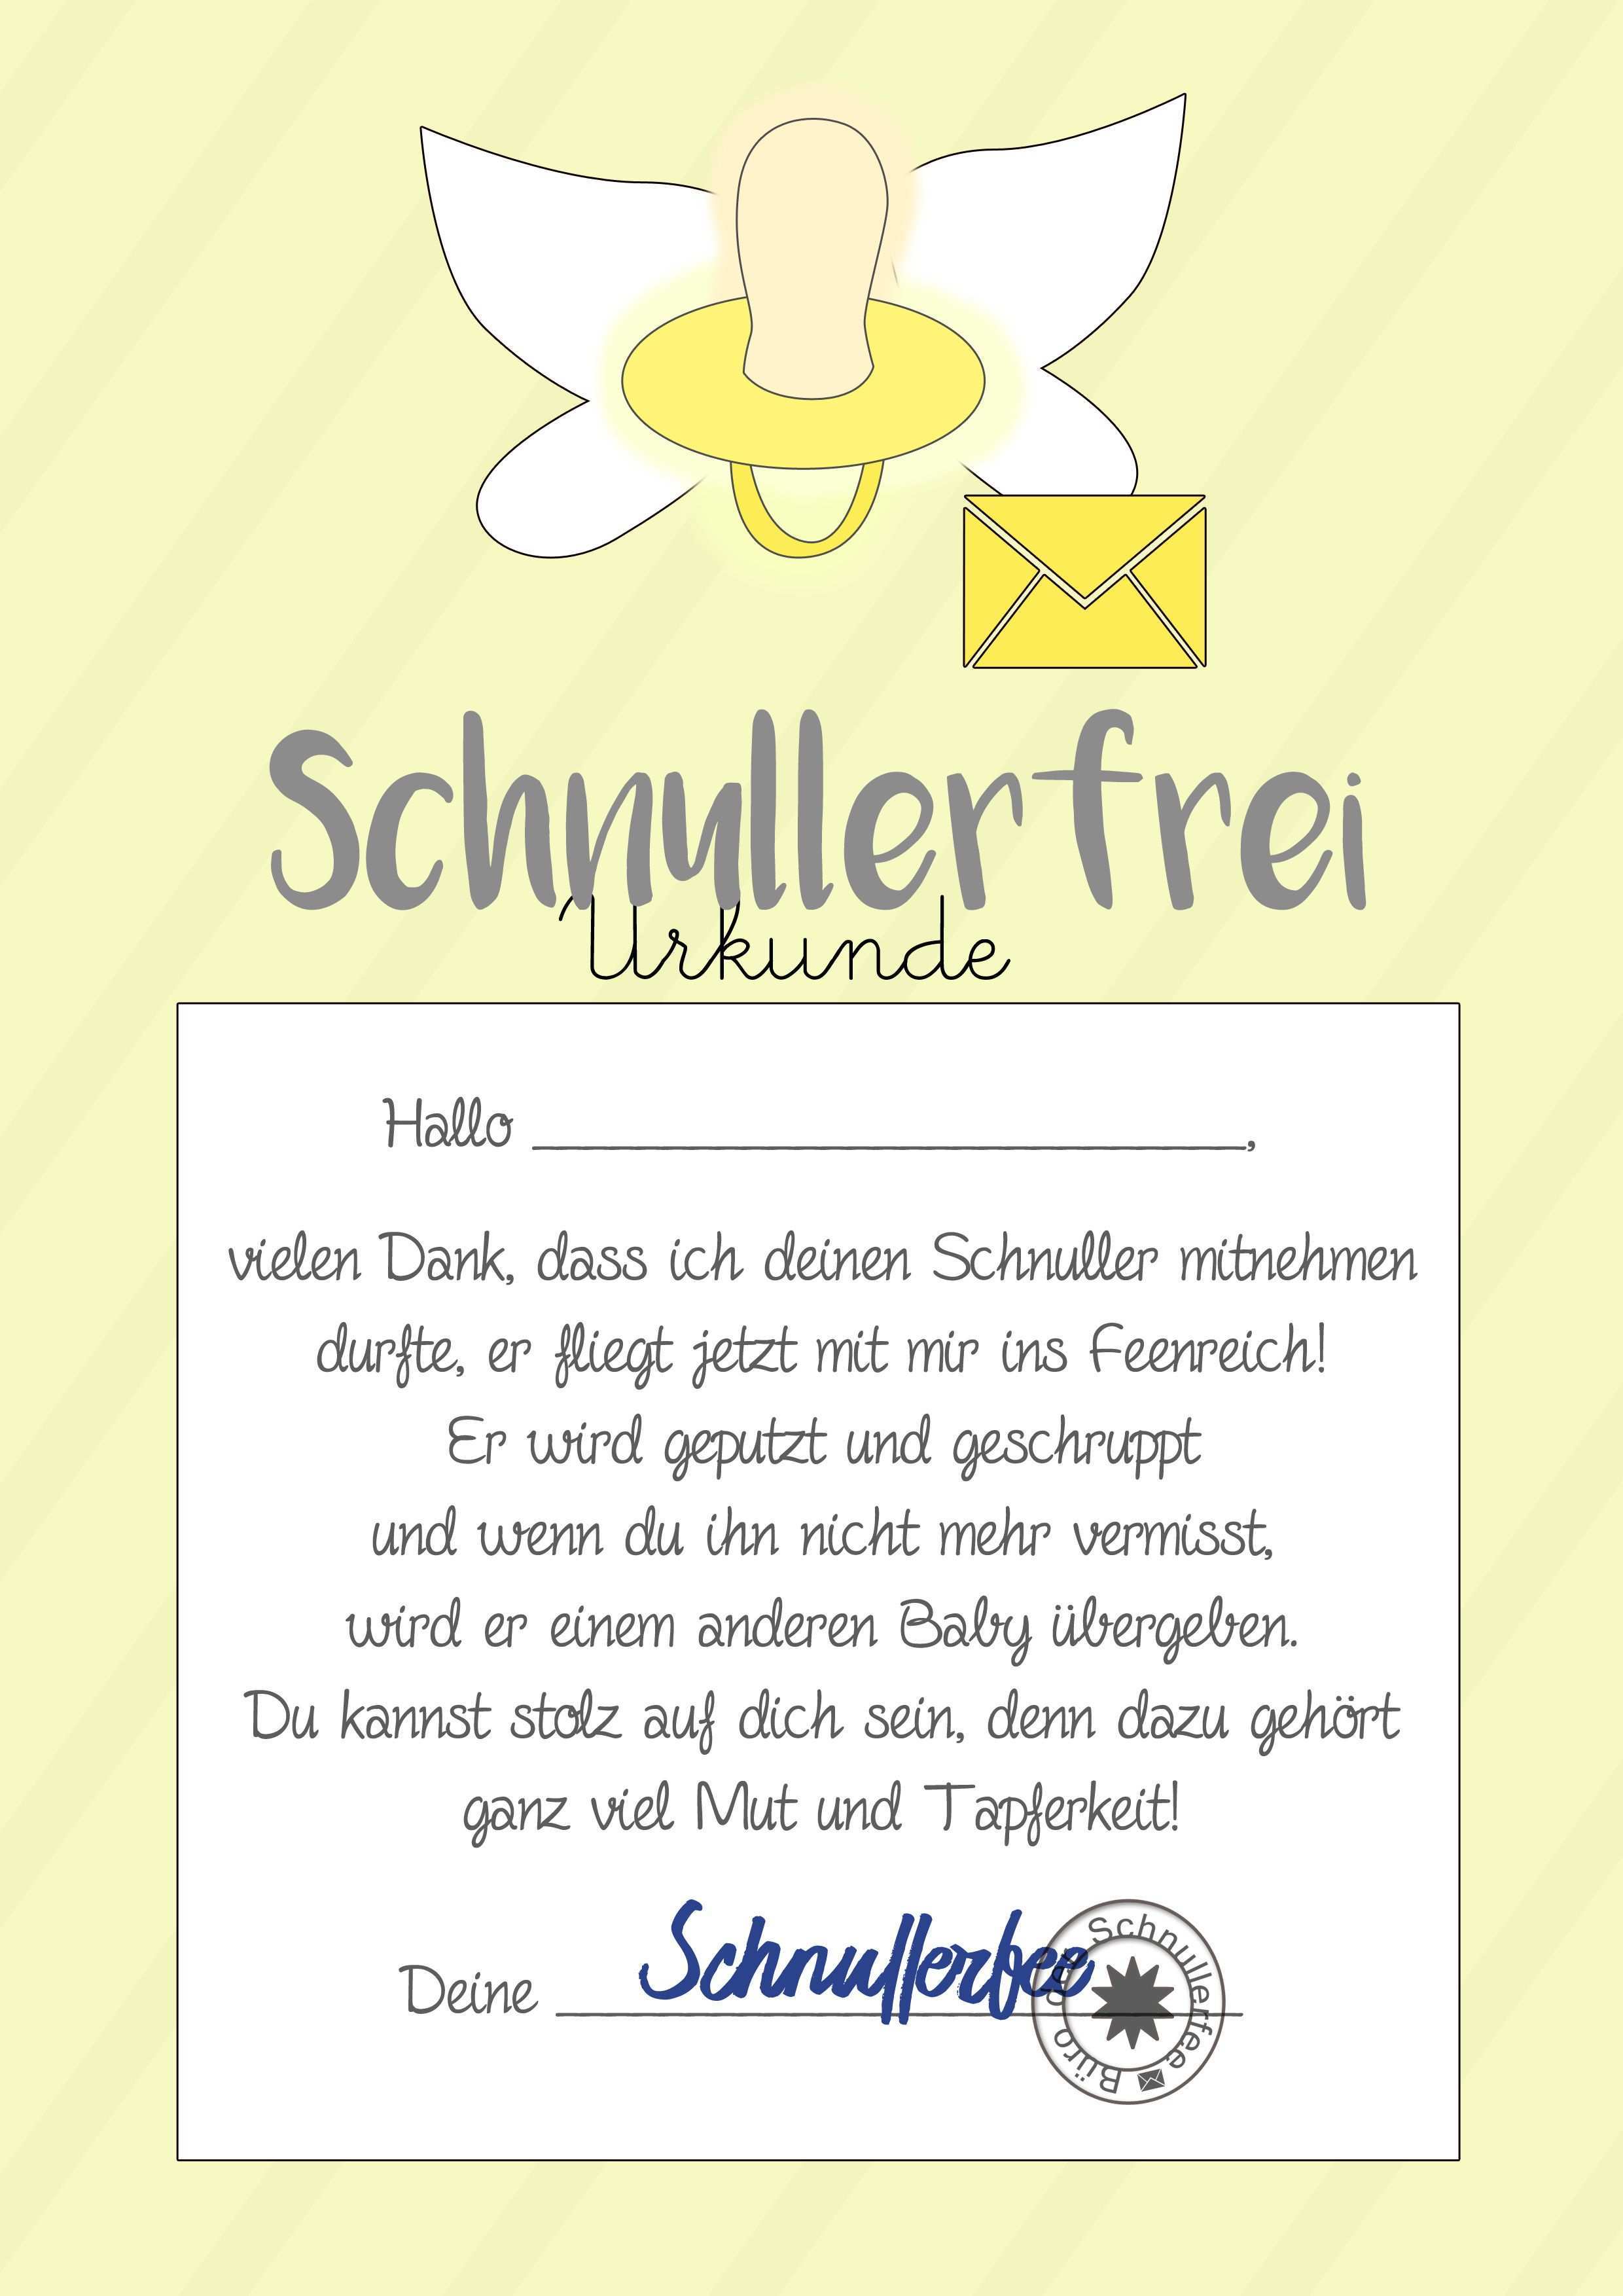 Schnullerfee Brief Gelb Jpg 2 480 3 508 Pixel Schnullerfee Schnuller Ausdrucken